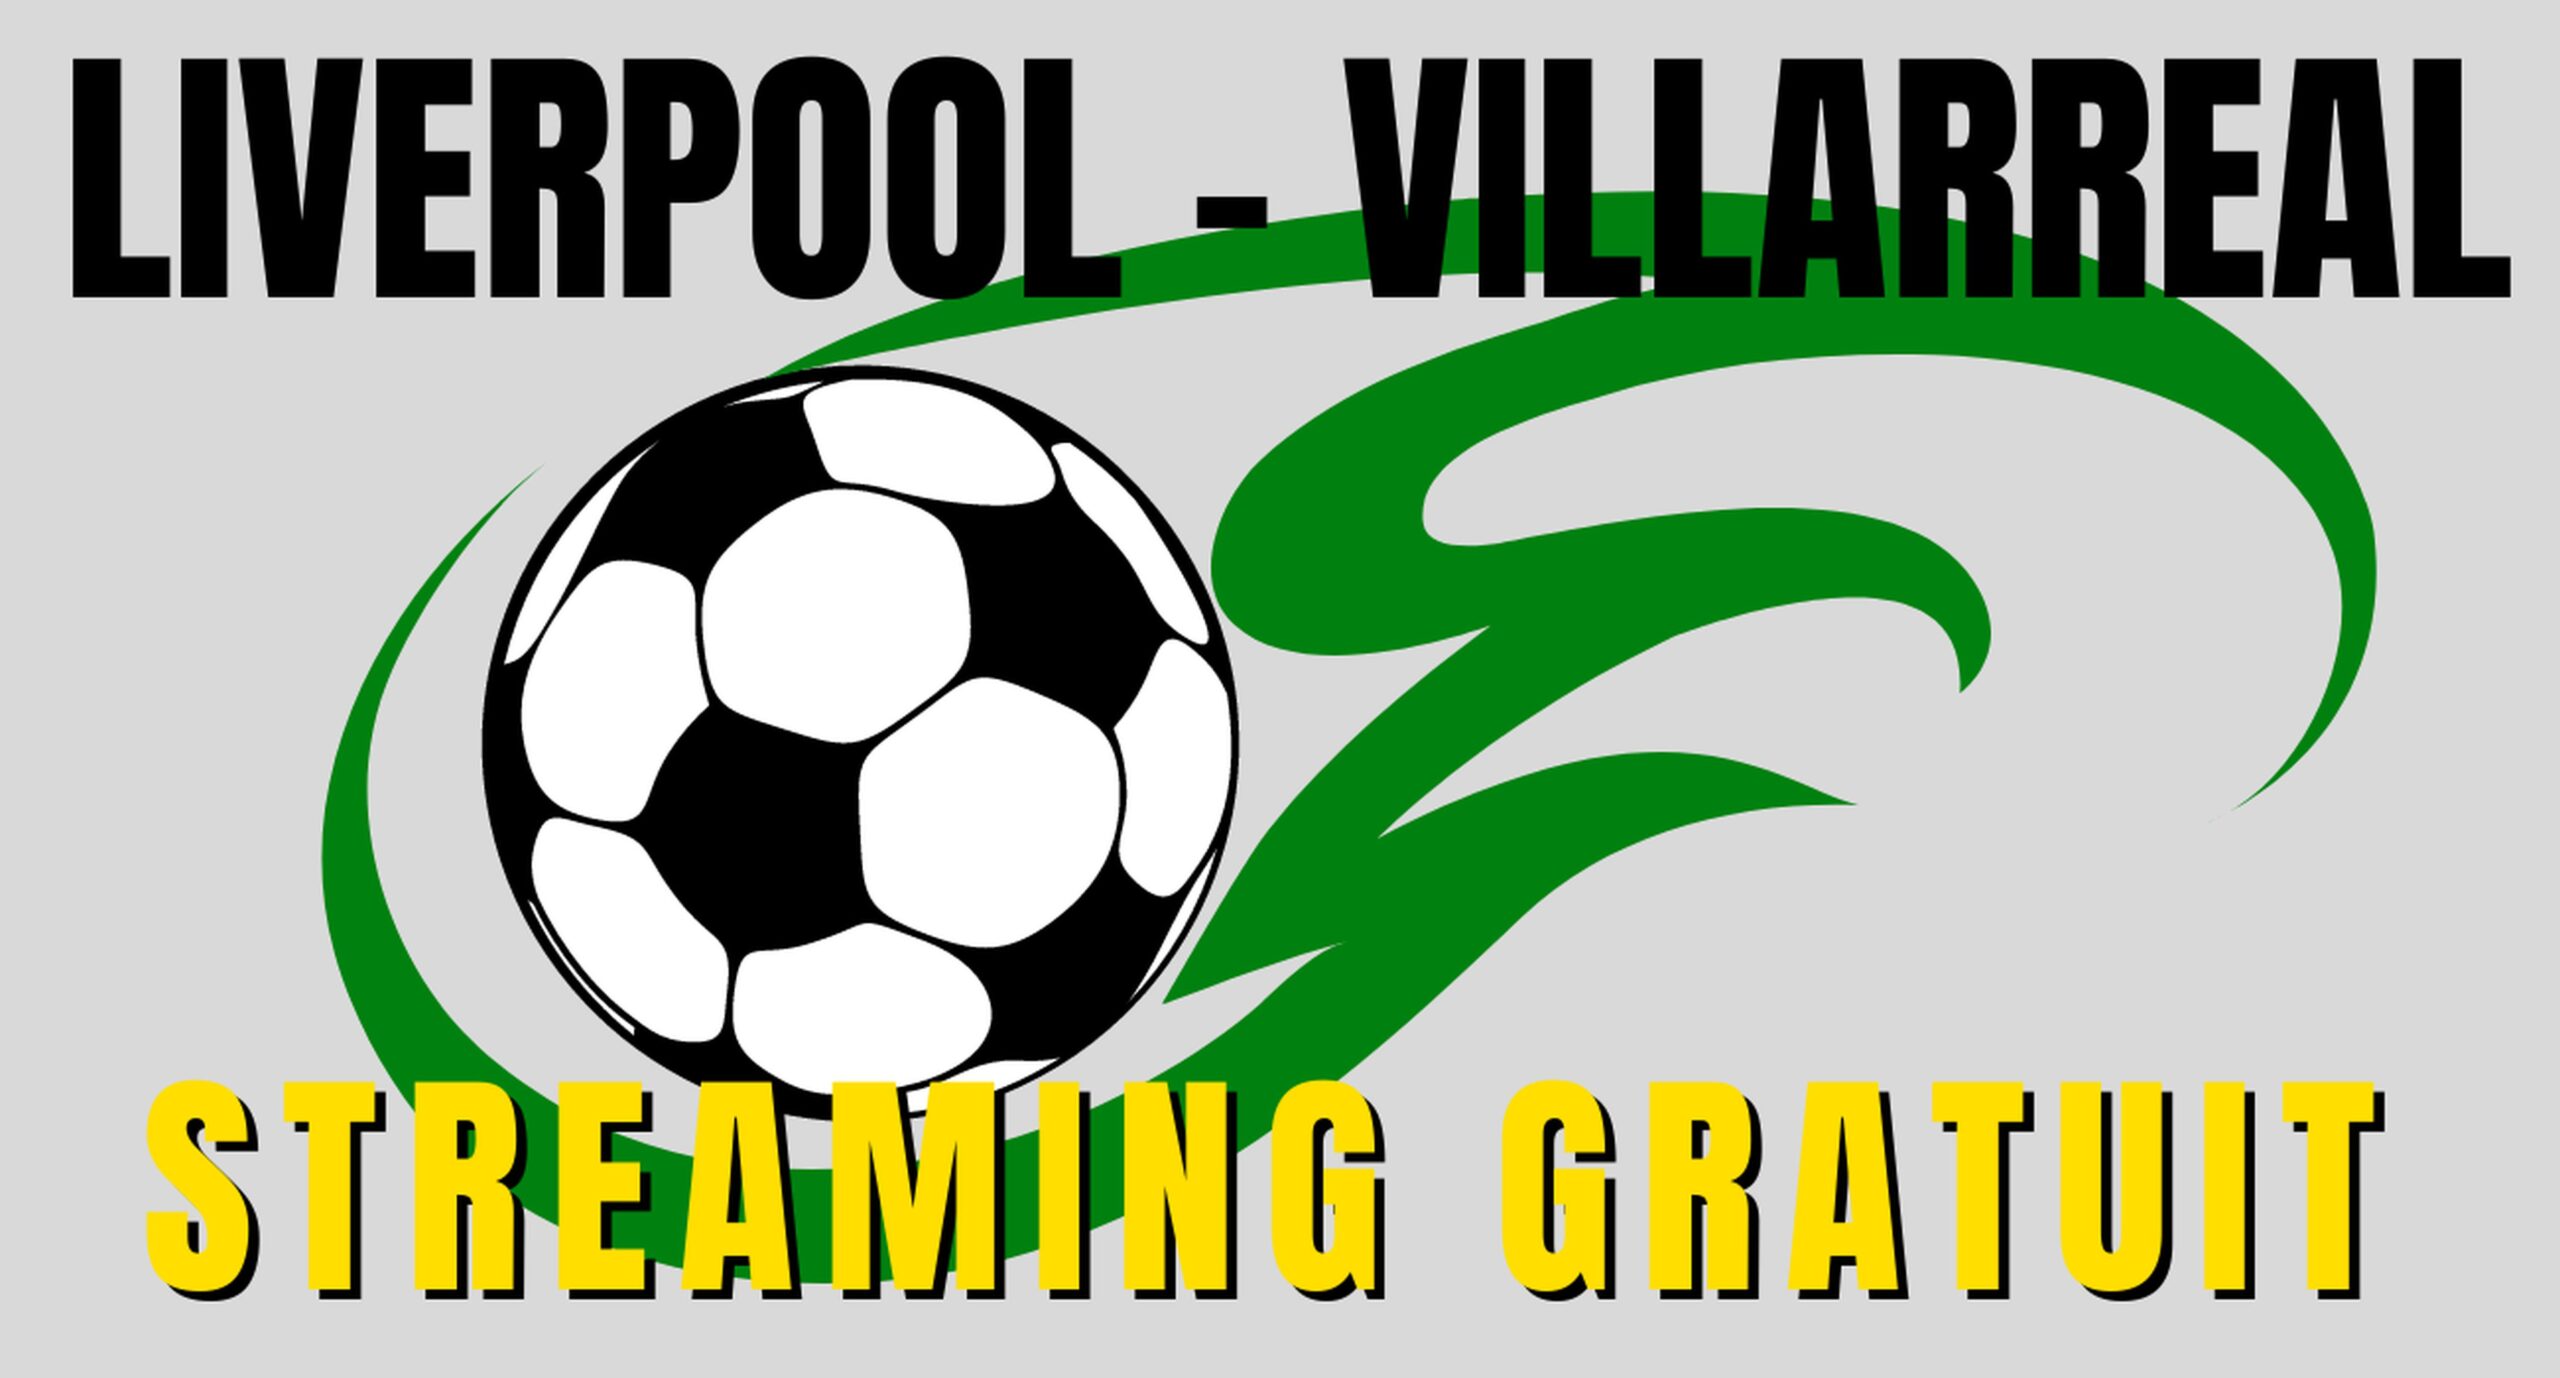 Liverpool Villarreal en Streaming gratuit sur une chaîne étrangère 3